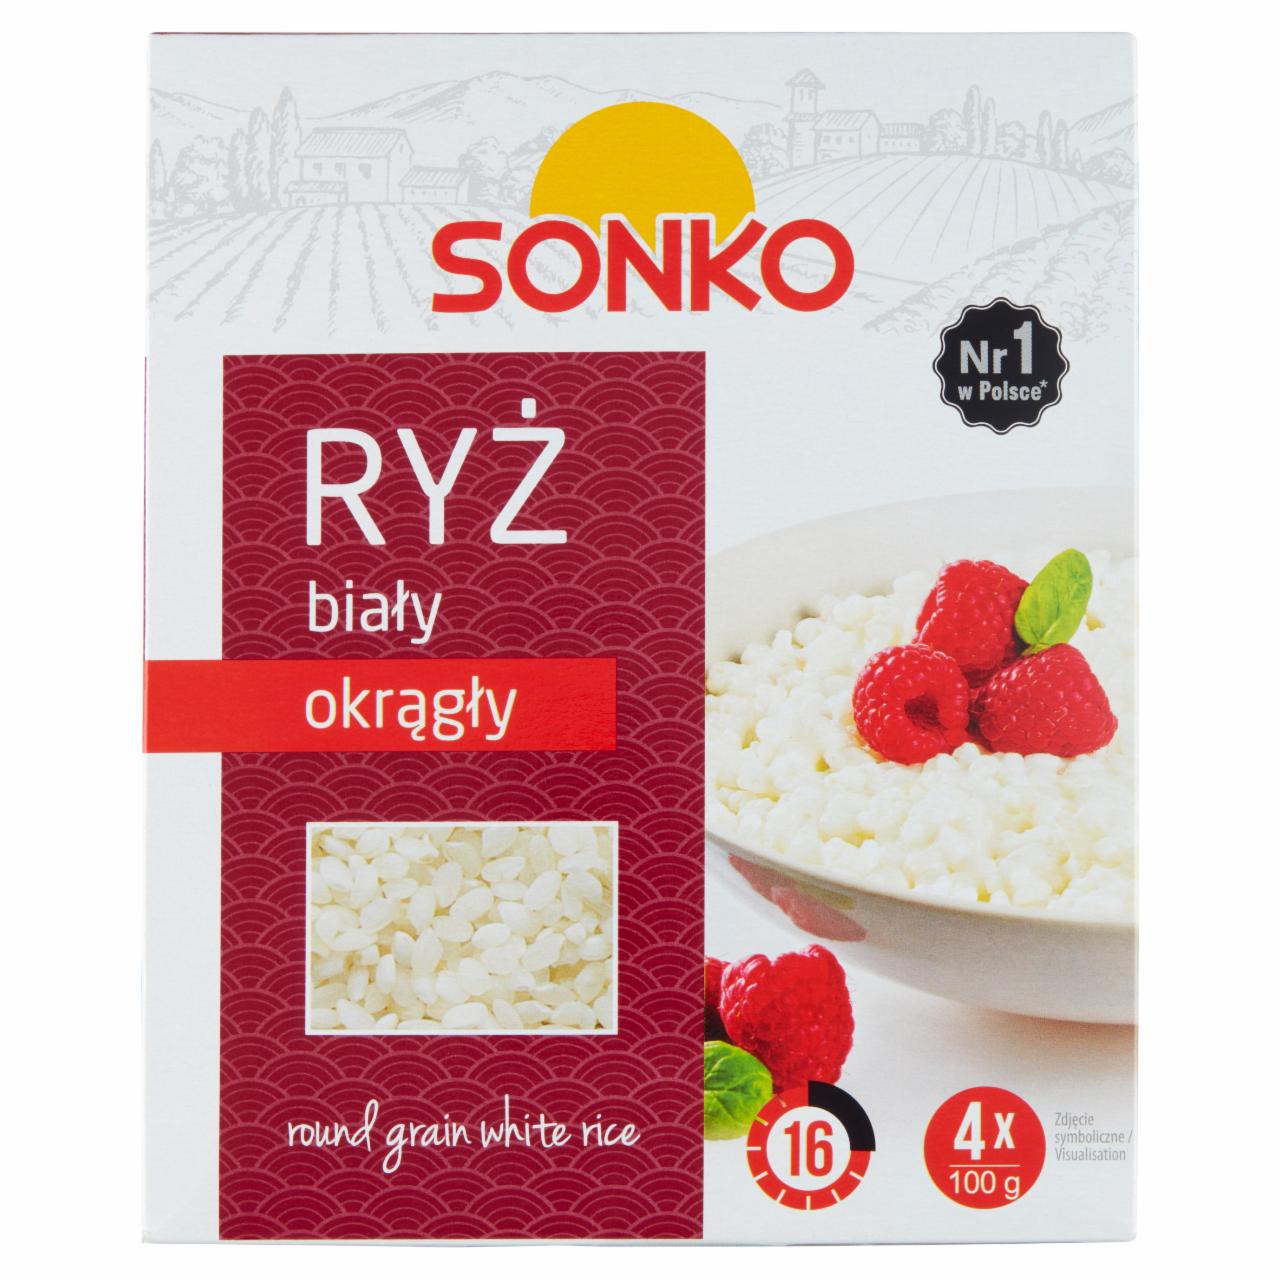 Zdjęcia - Sonko Ryż biały okrągły 400 g (4 x 100 g)